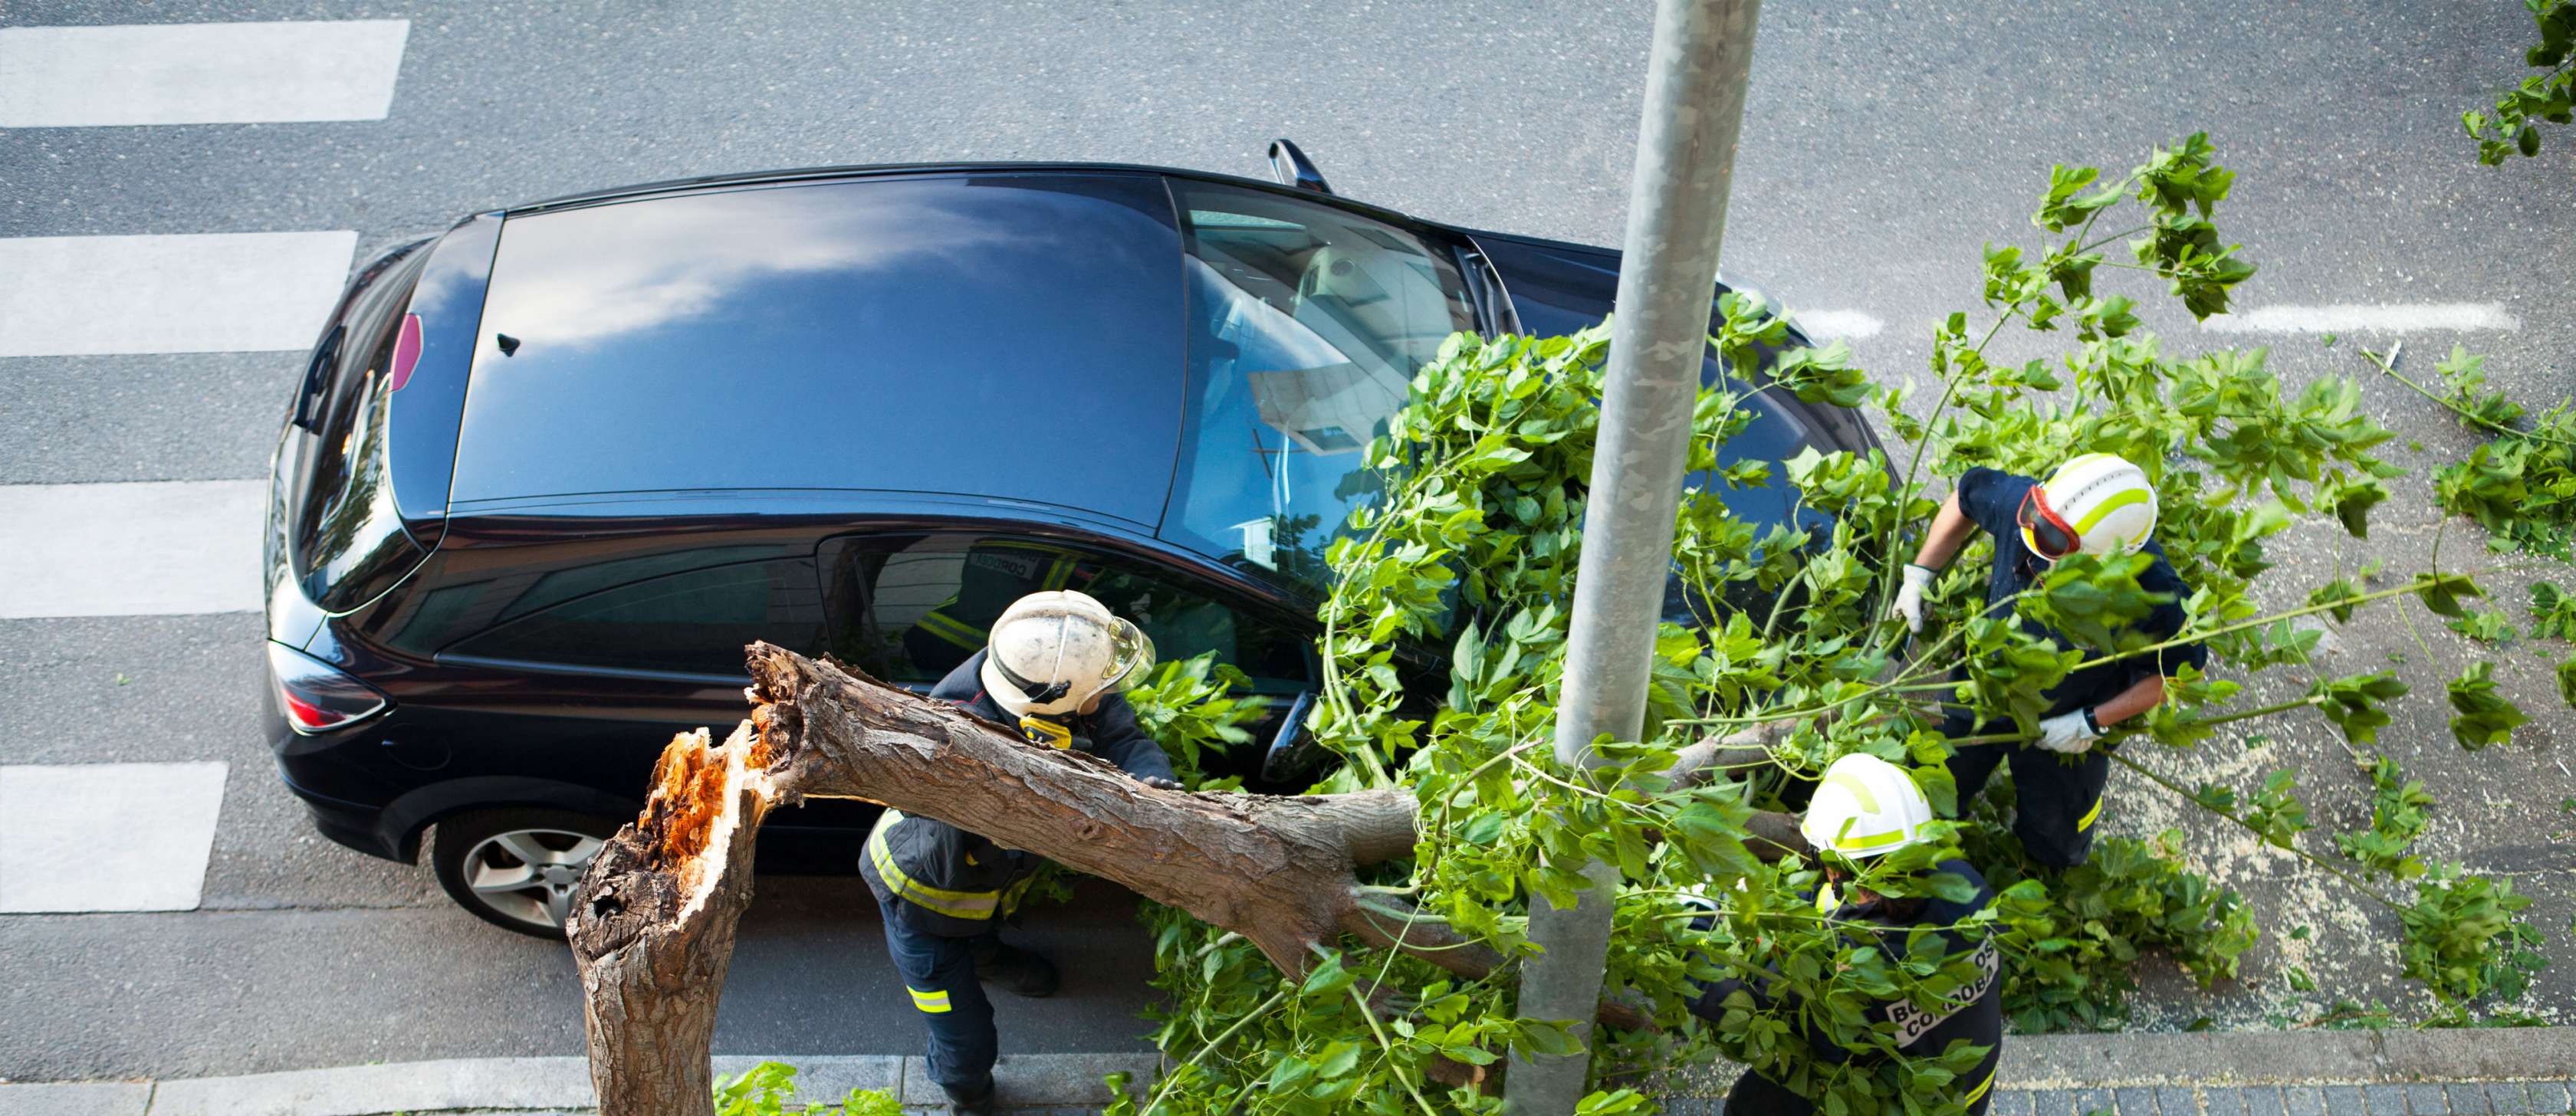 Sturmschaden Auto: Umgestürzter Baum liegt auf parkendem Pkw